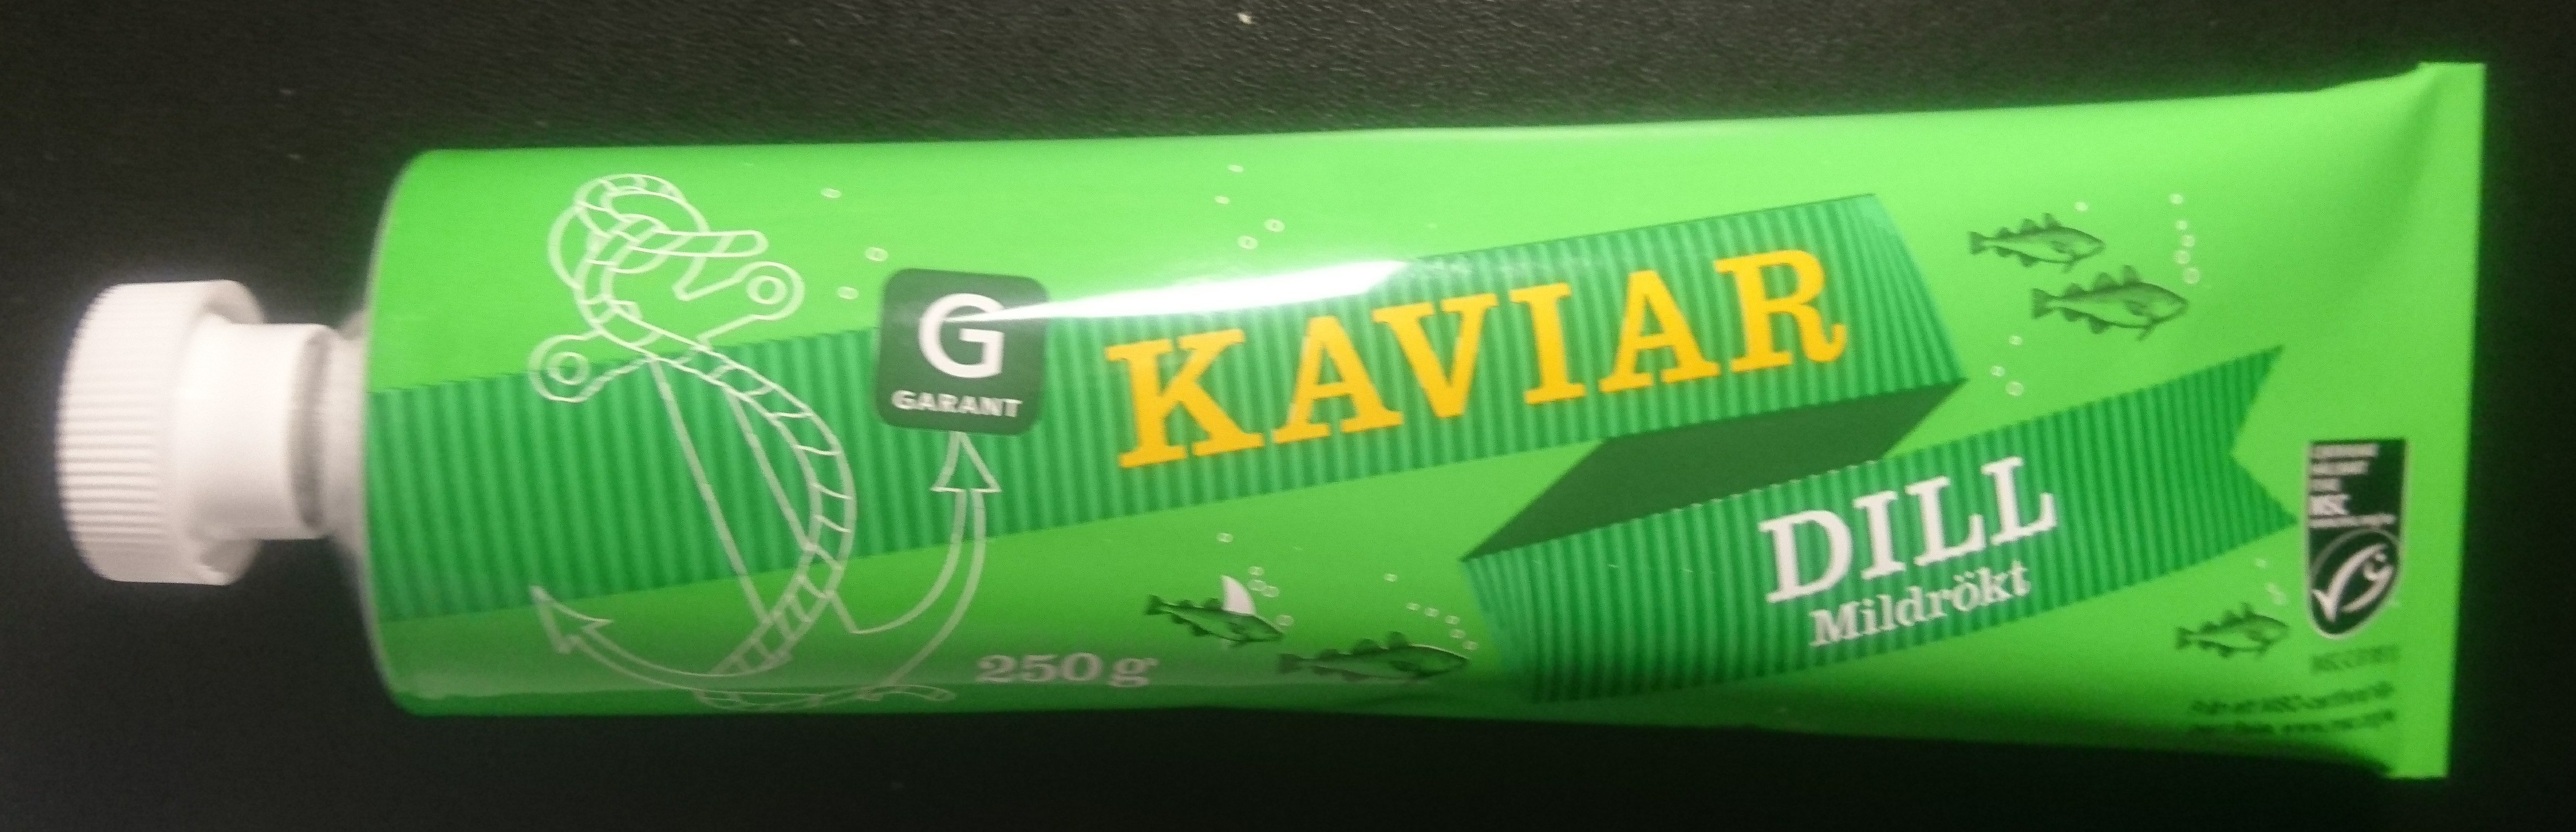 Kaviar, dill, mildrökt - Produkt